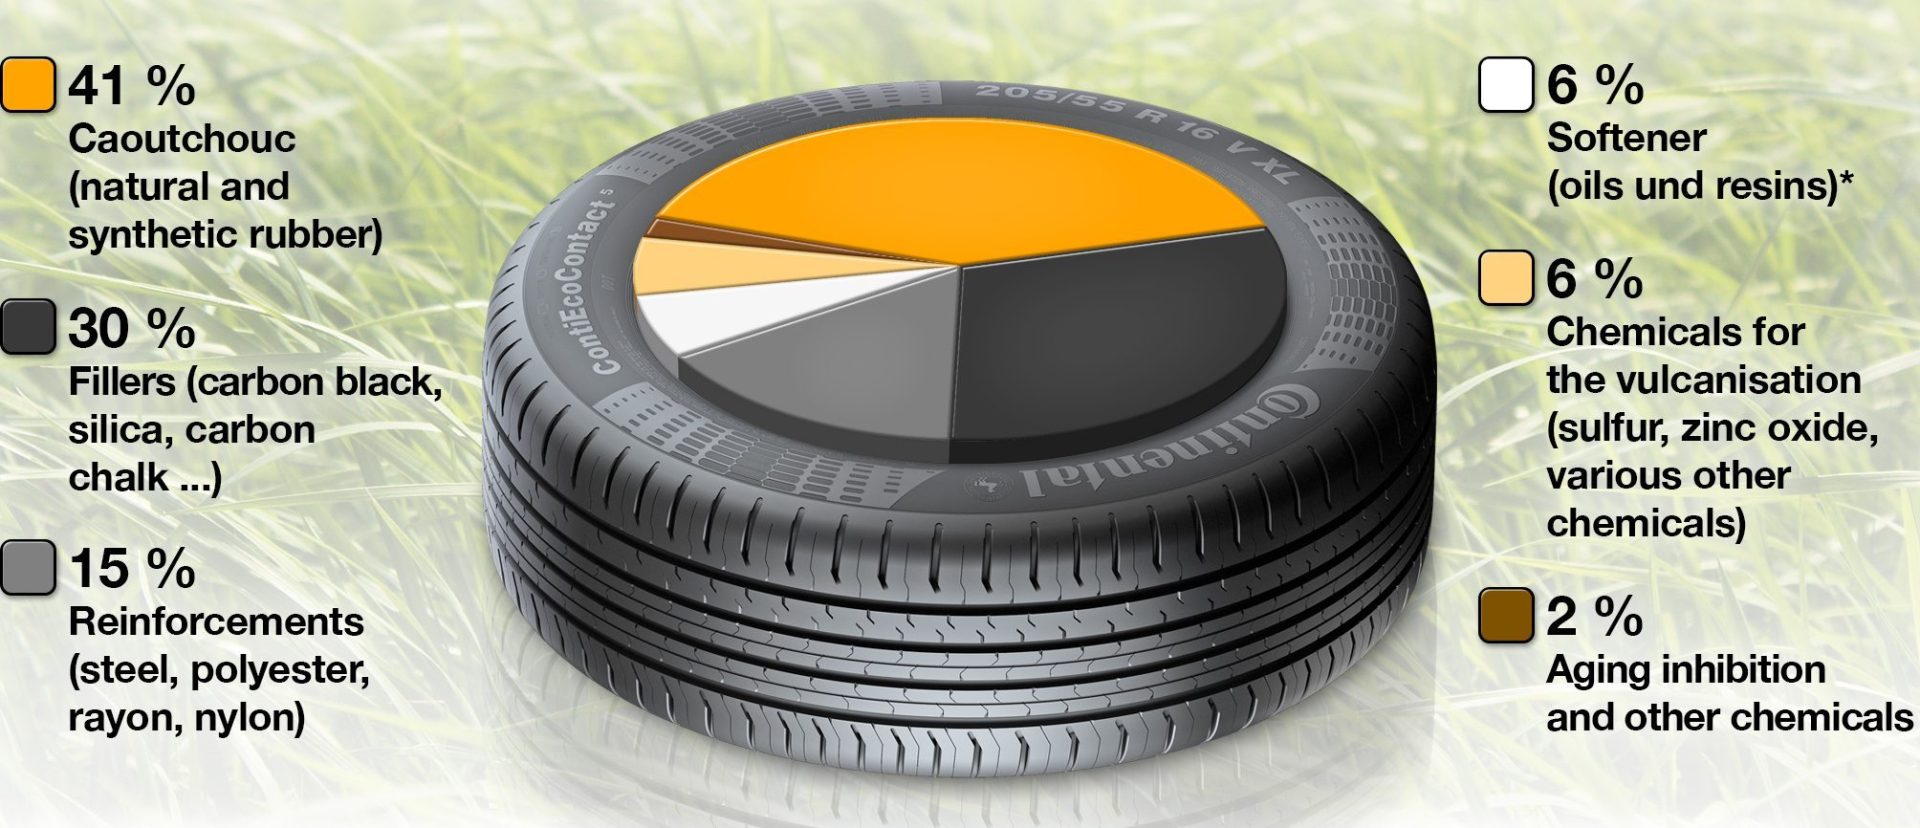 Composición del neumático desarrollado por Continental.